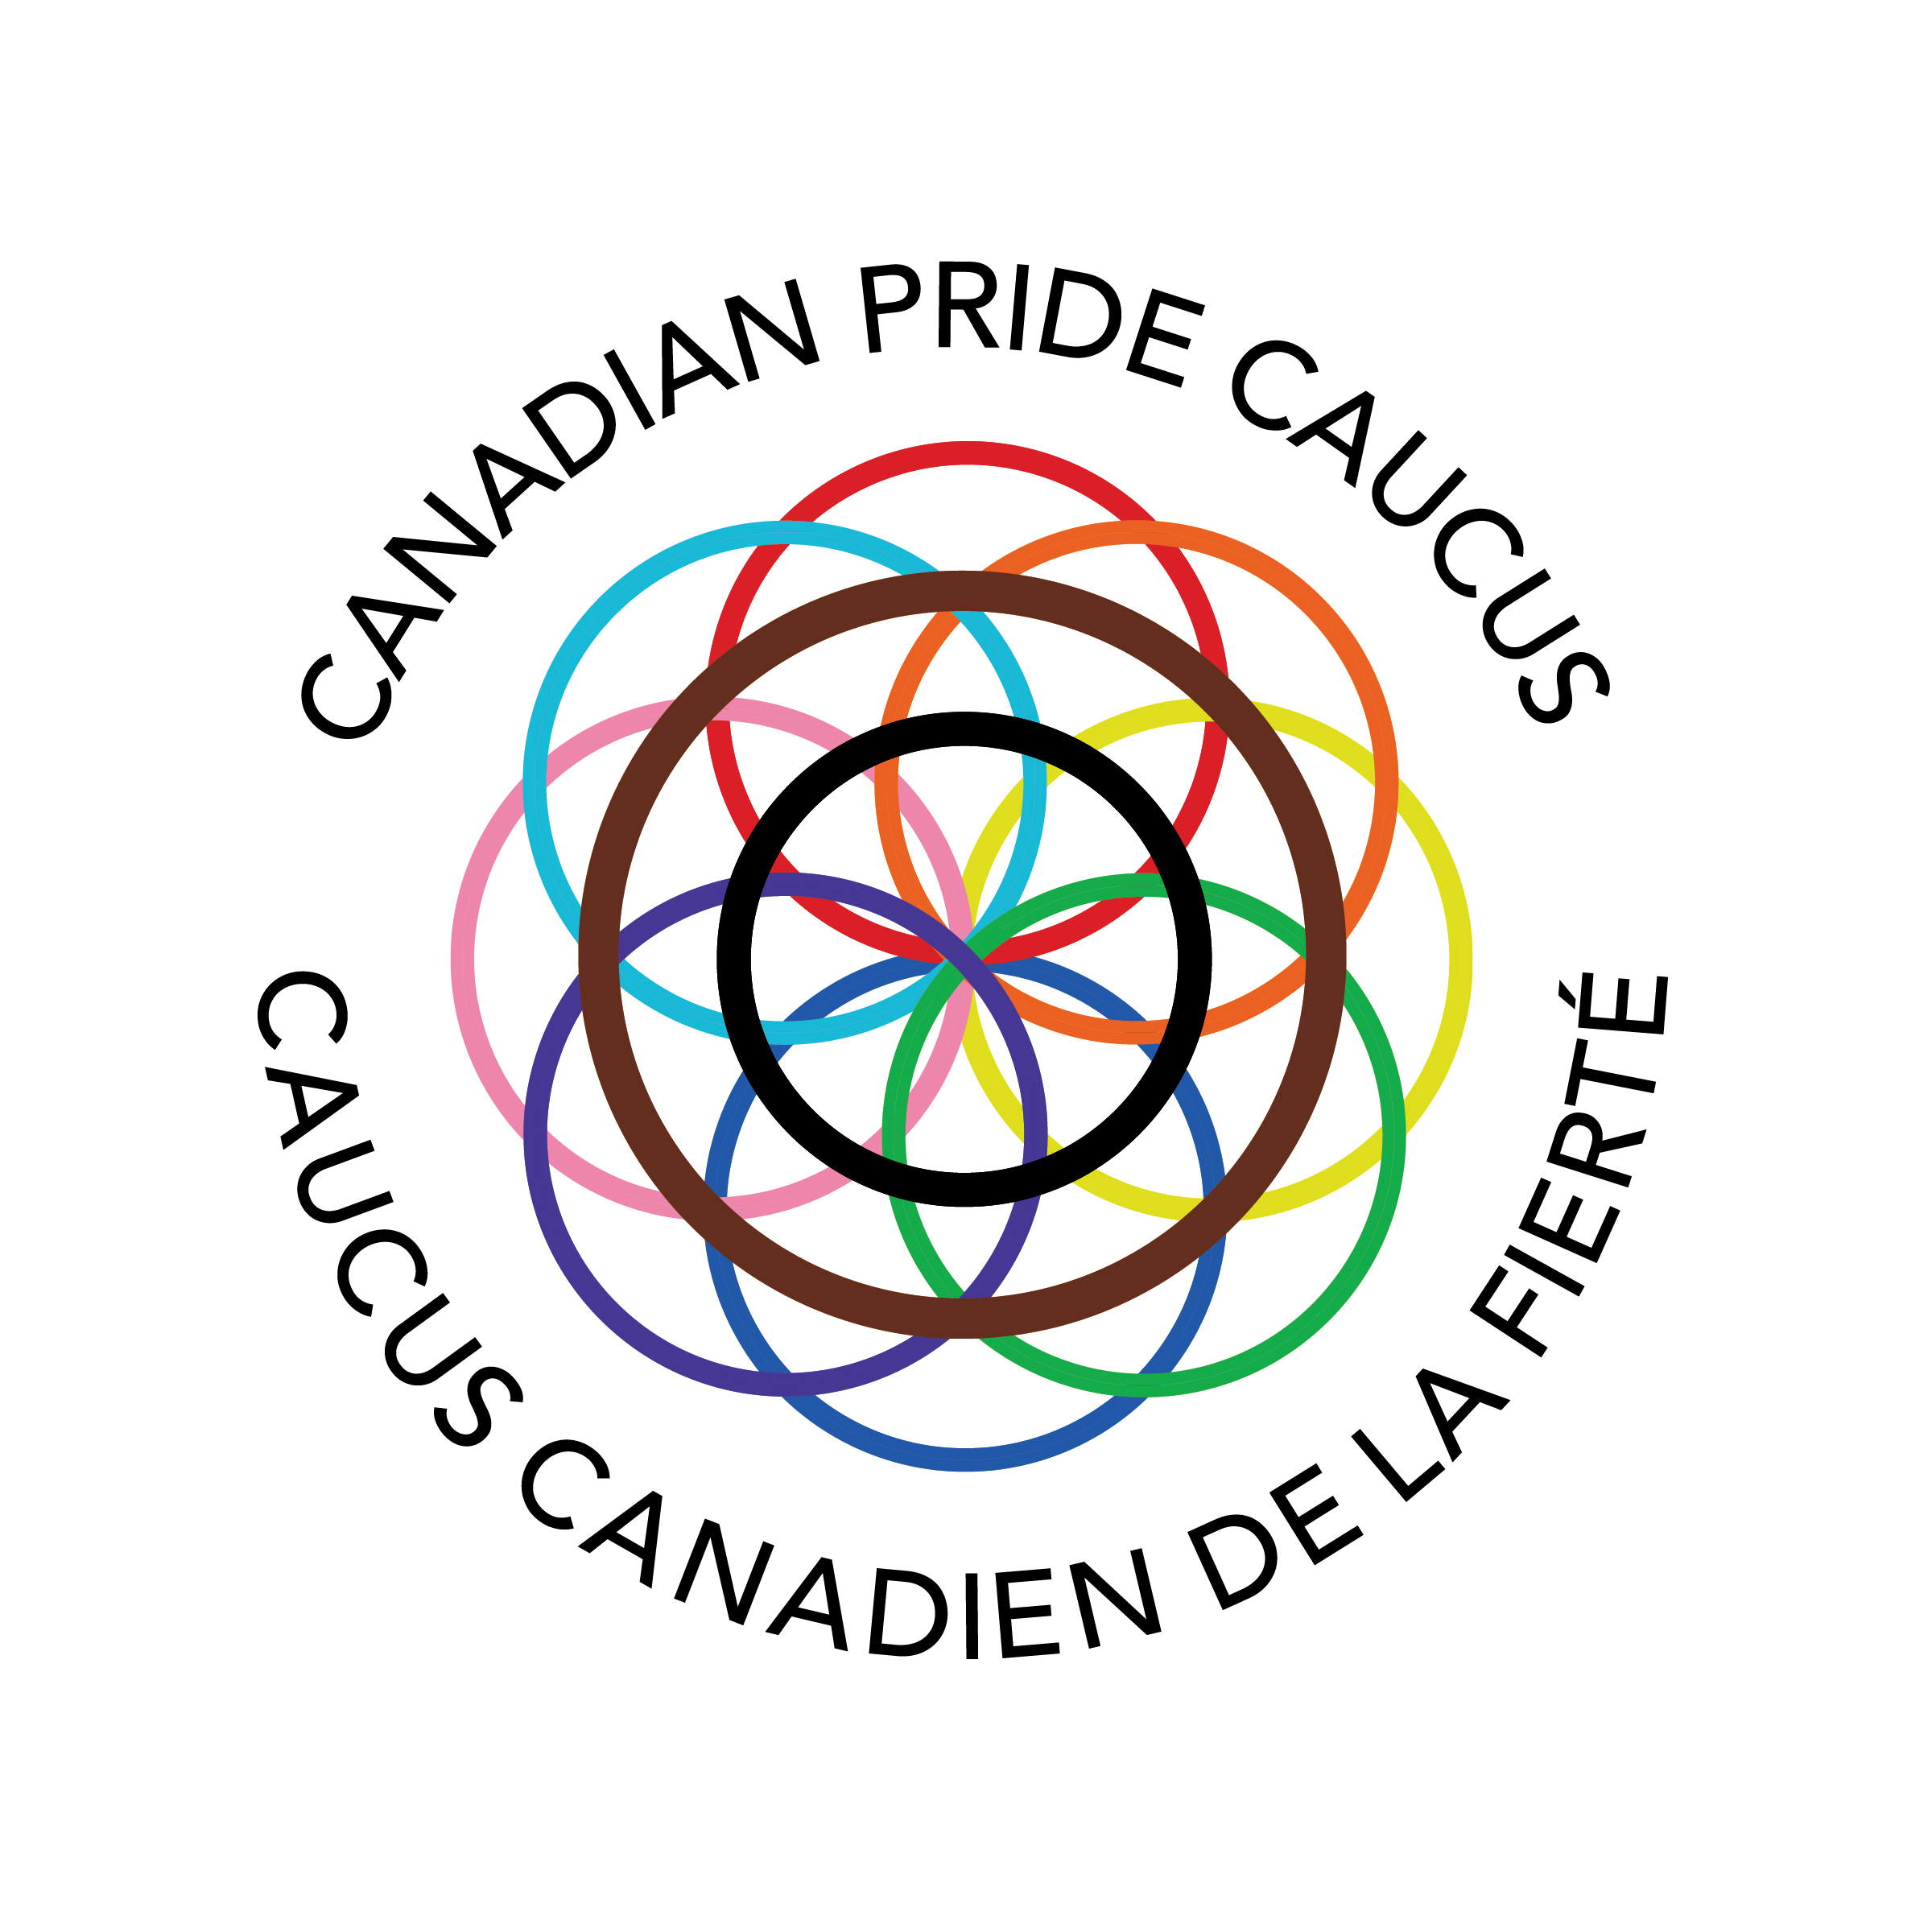 Canadian Pride Caucus